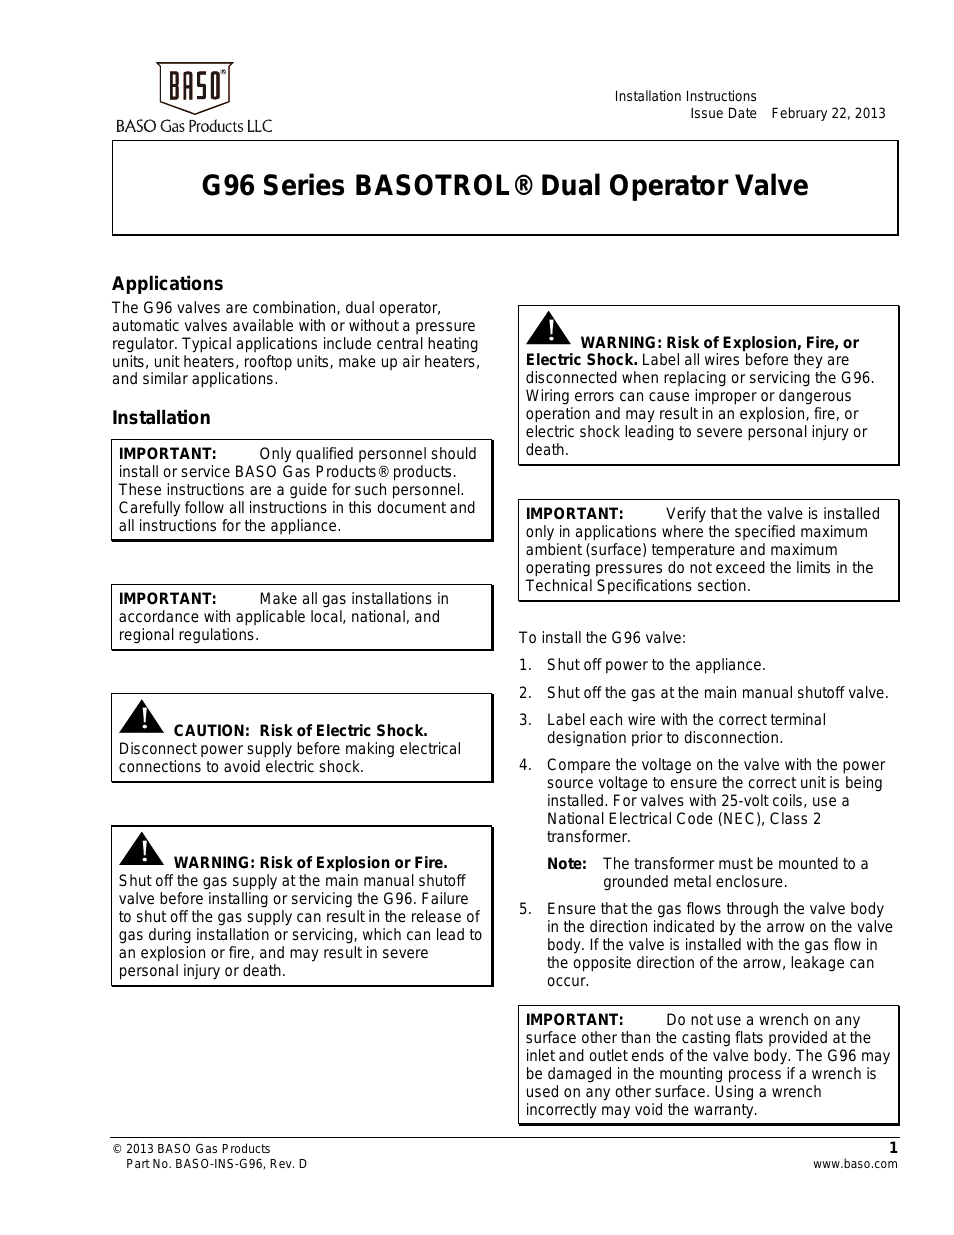 G96 Series Dual Operator Valve